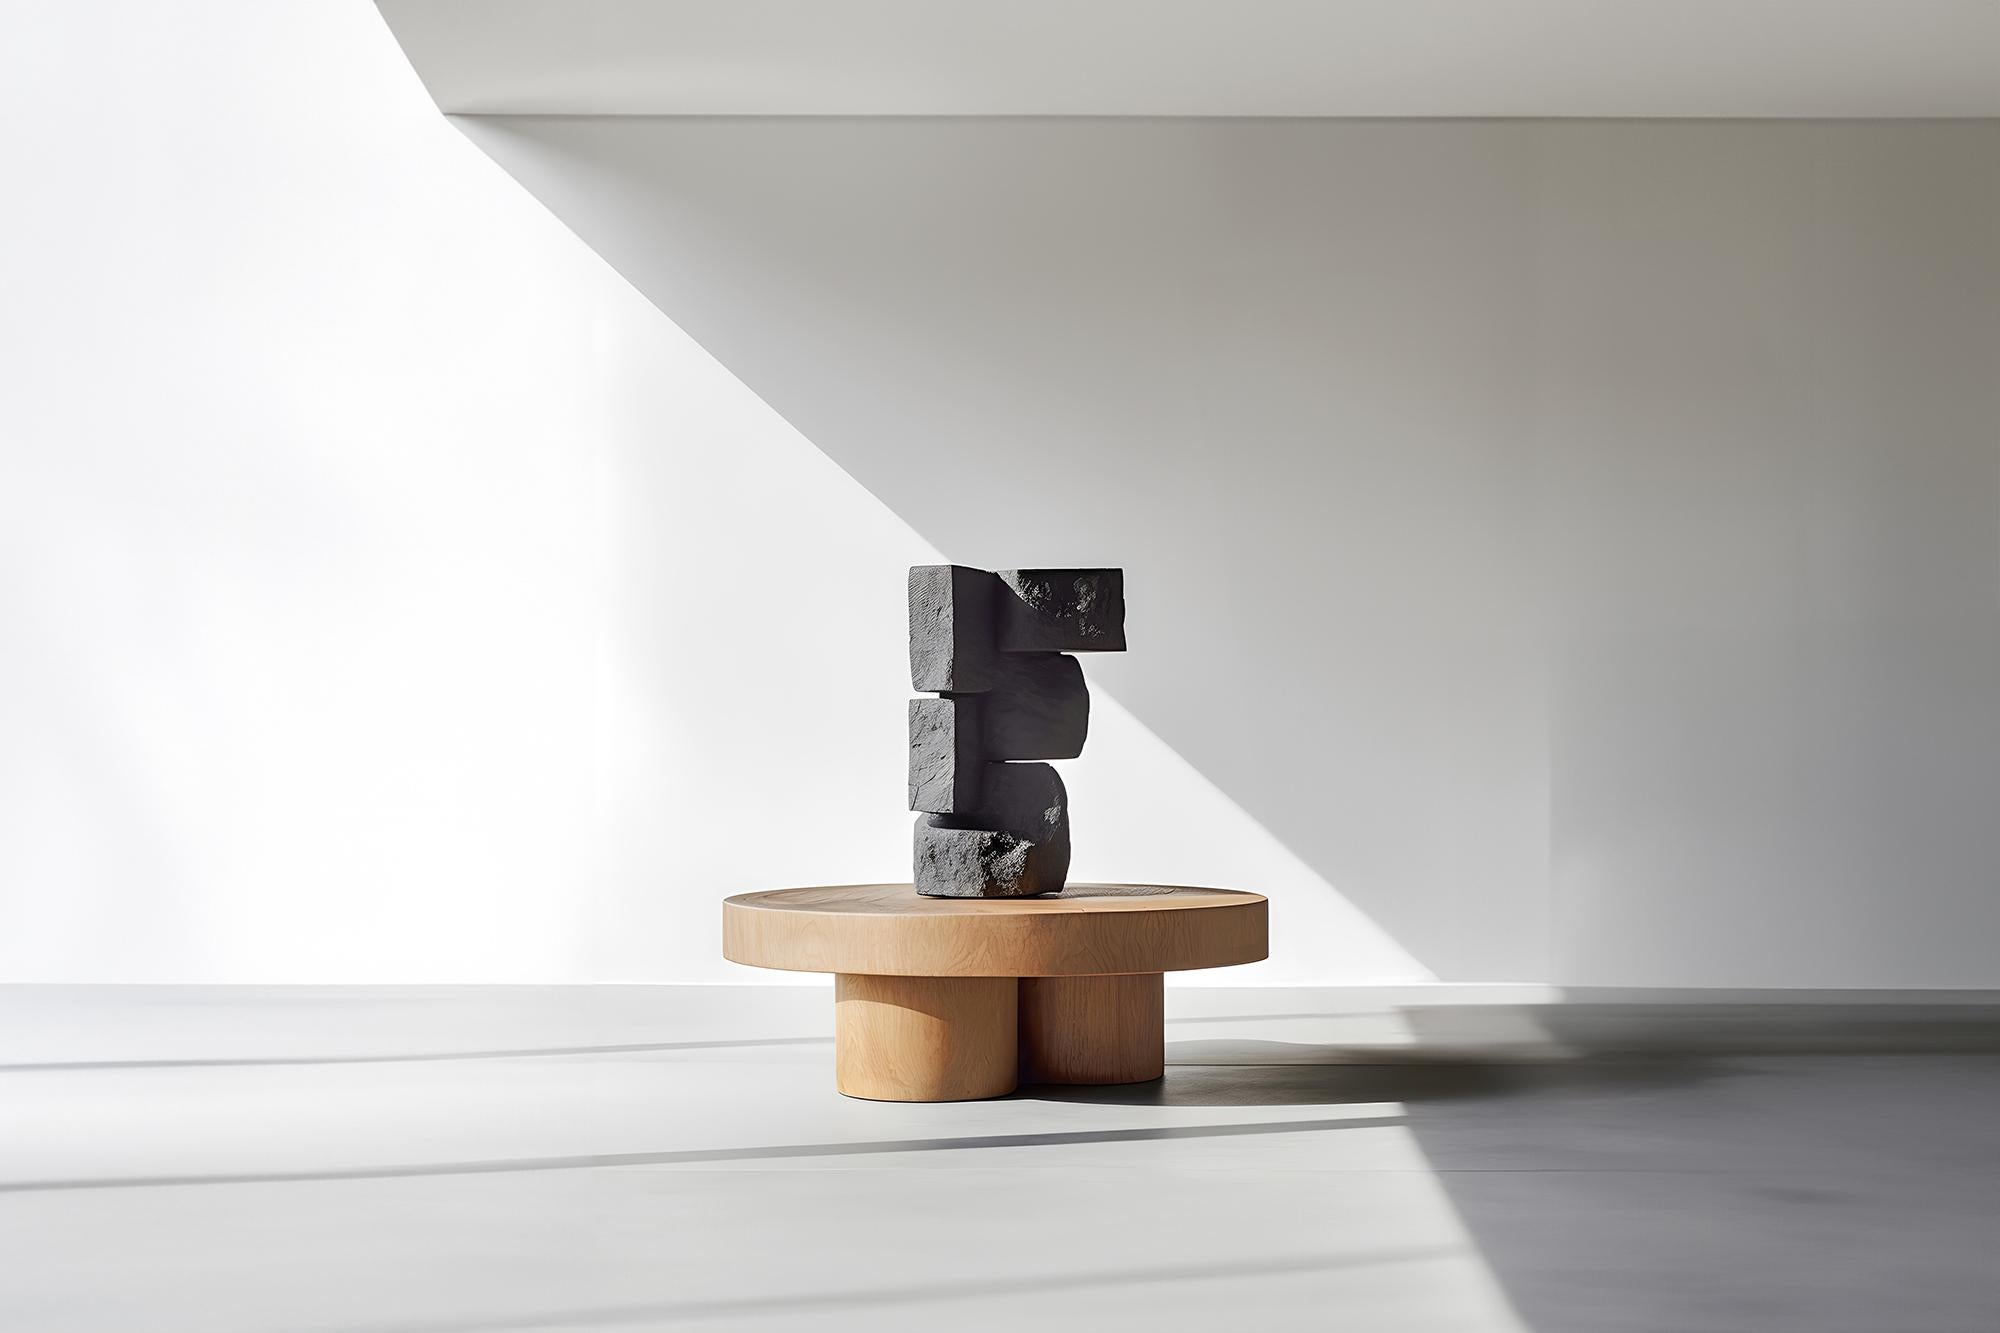 Joel Escalona's Unseen Force #31 Solid Oak Coffee Table, Sculptural Art

Table basse sculpturale en bois massif avec une finition naturelle à base d'eau ou carbonisée. En raison de la nature du processus de production, chaque pièce peut varier en